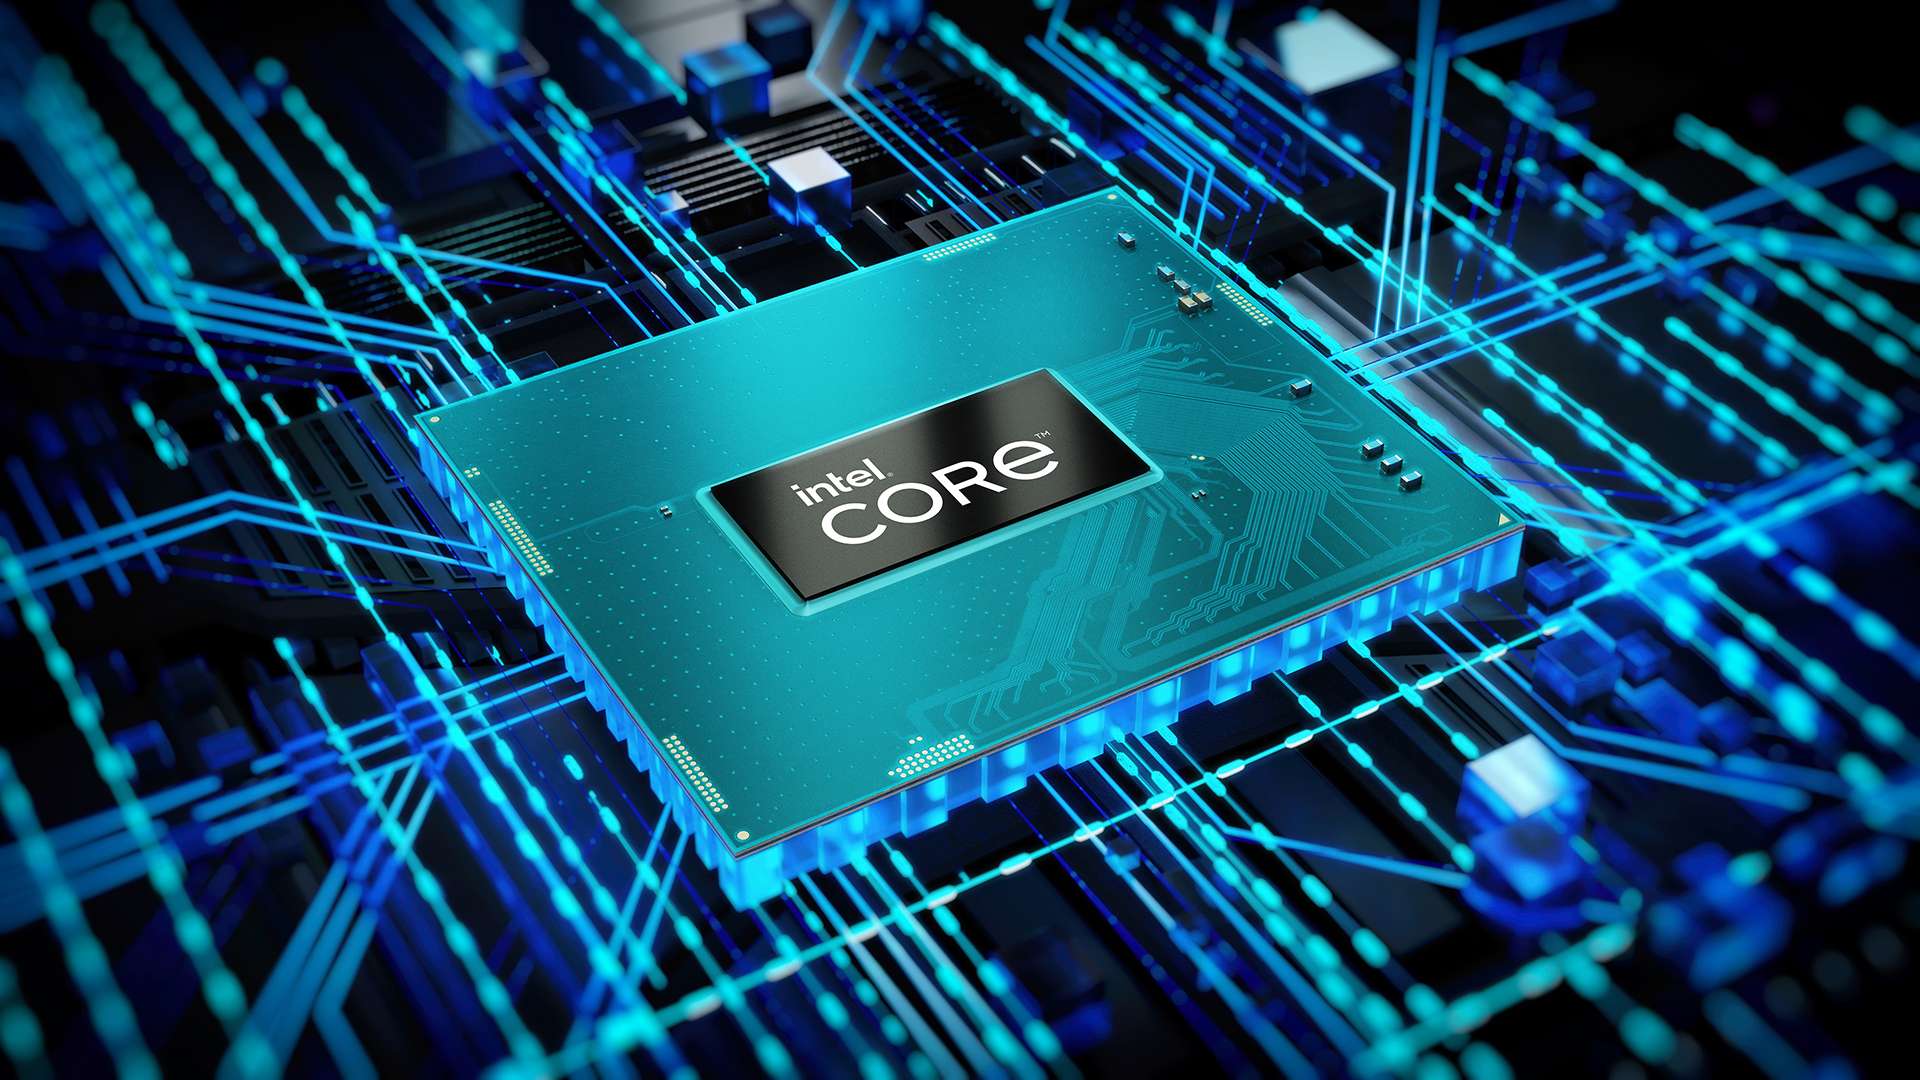 Intel Core HX thế hệ 12 ra mắt với vai trò là nền tảng máy trạm di động hàng đầu thế giới